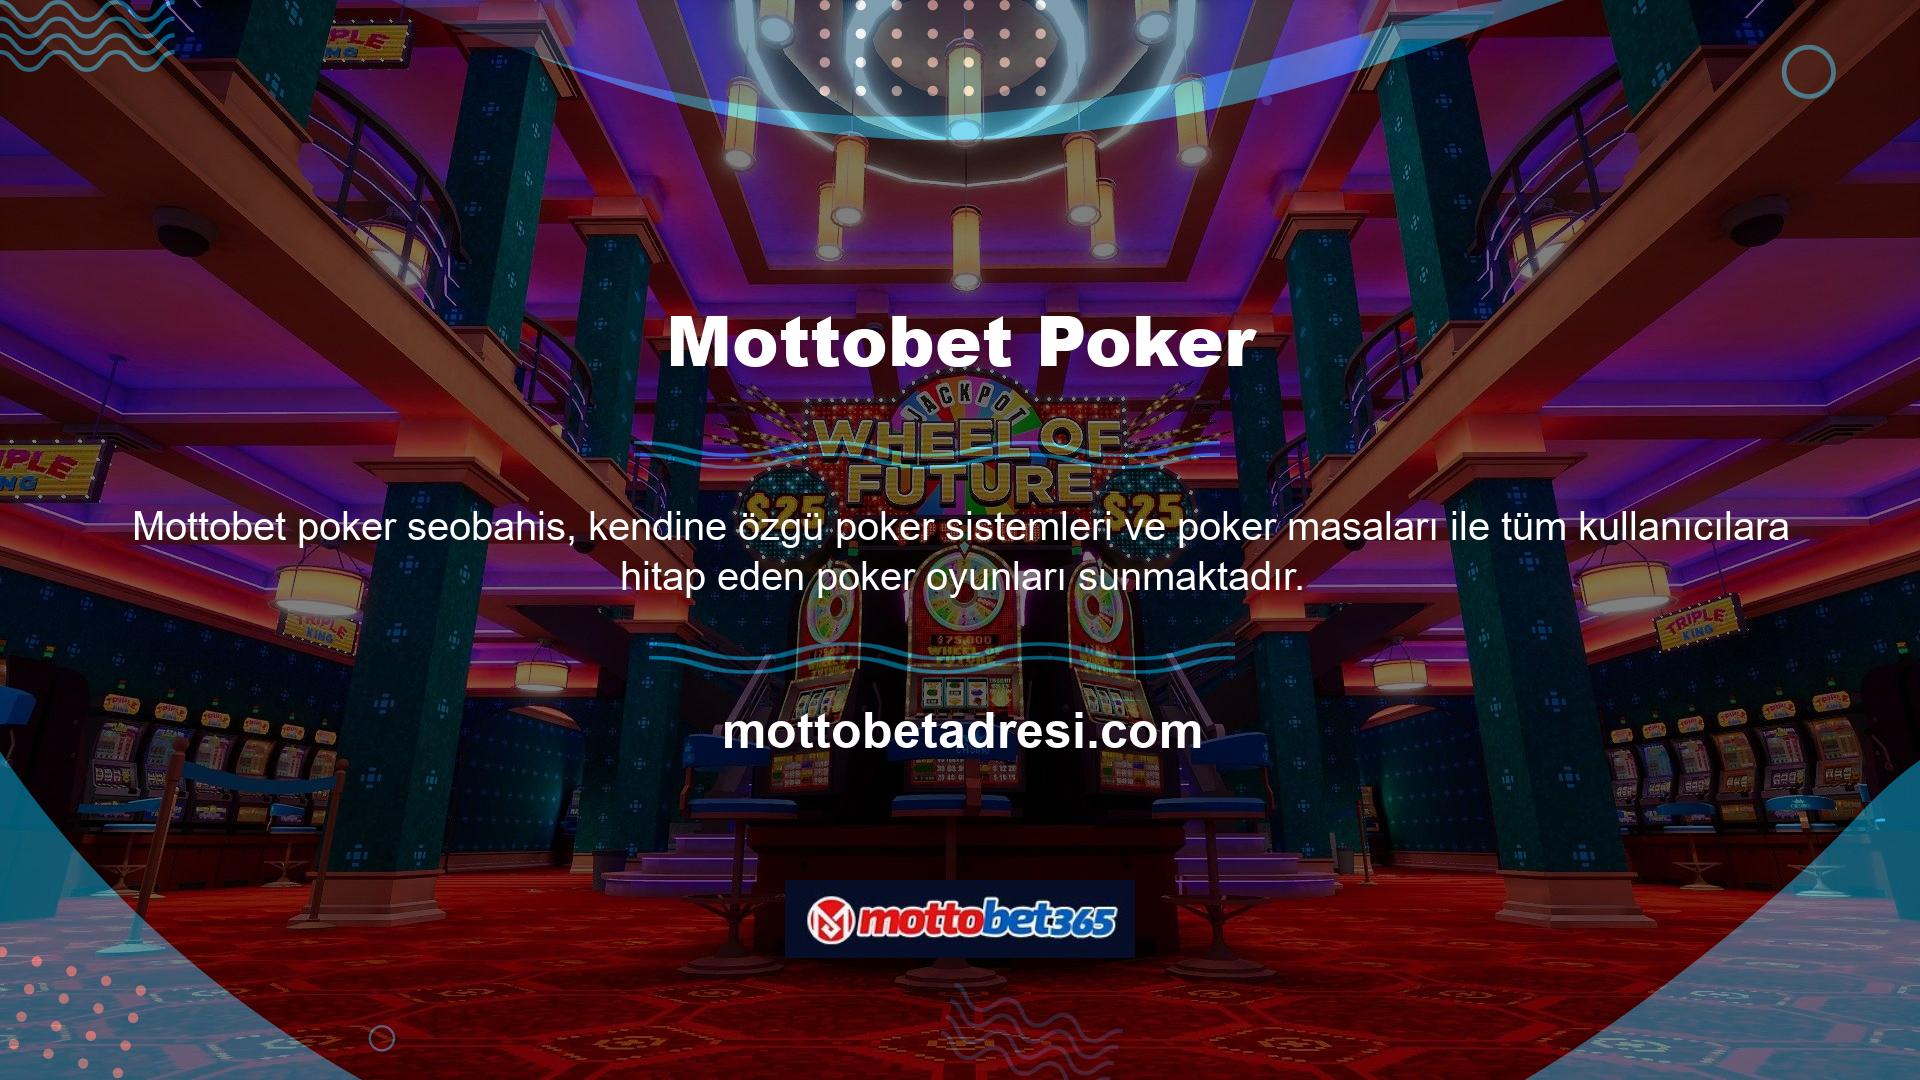 Mottobet Poker'de oyuncular farklı limitli masalarda kazanır